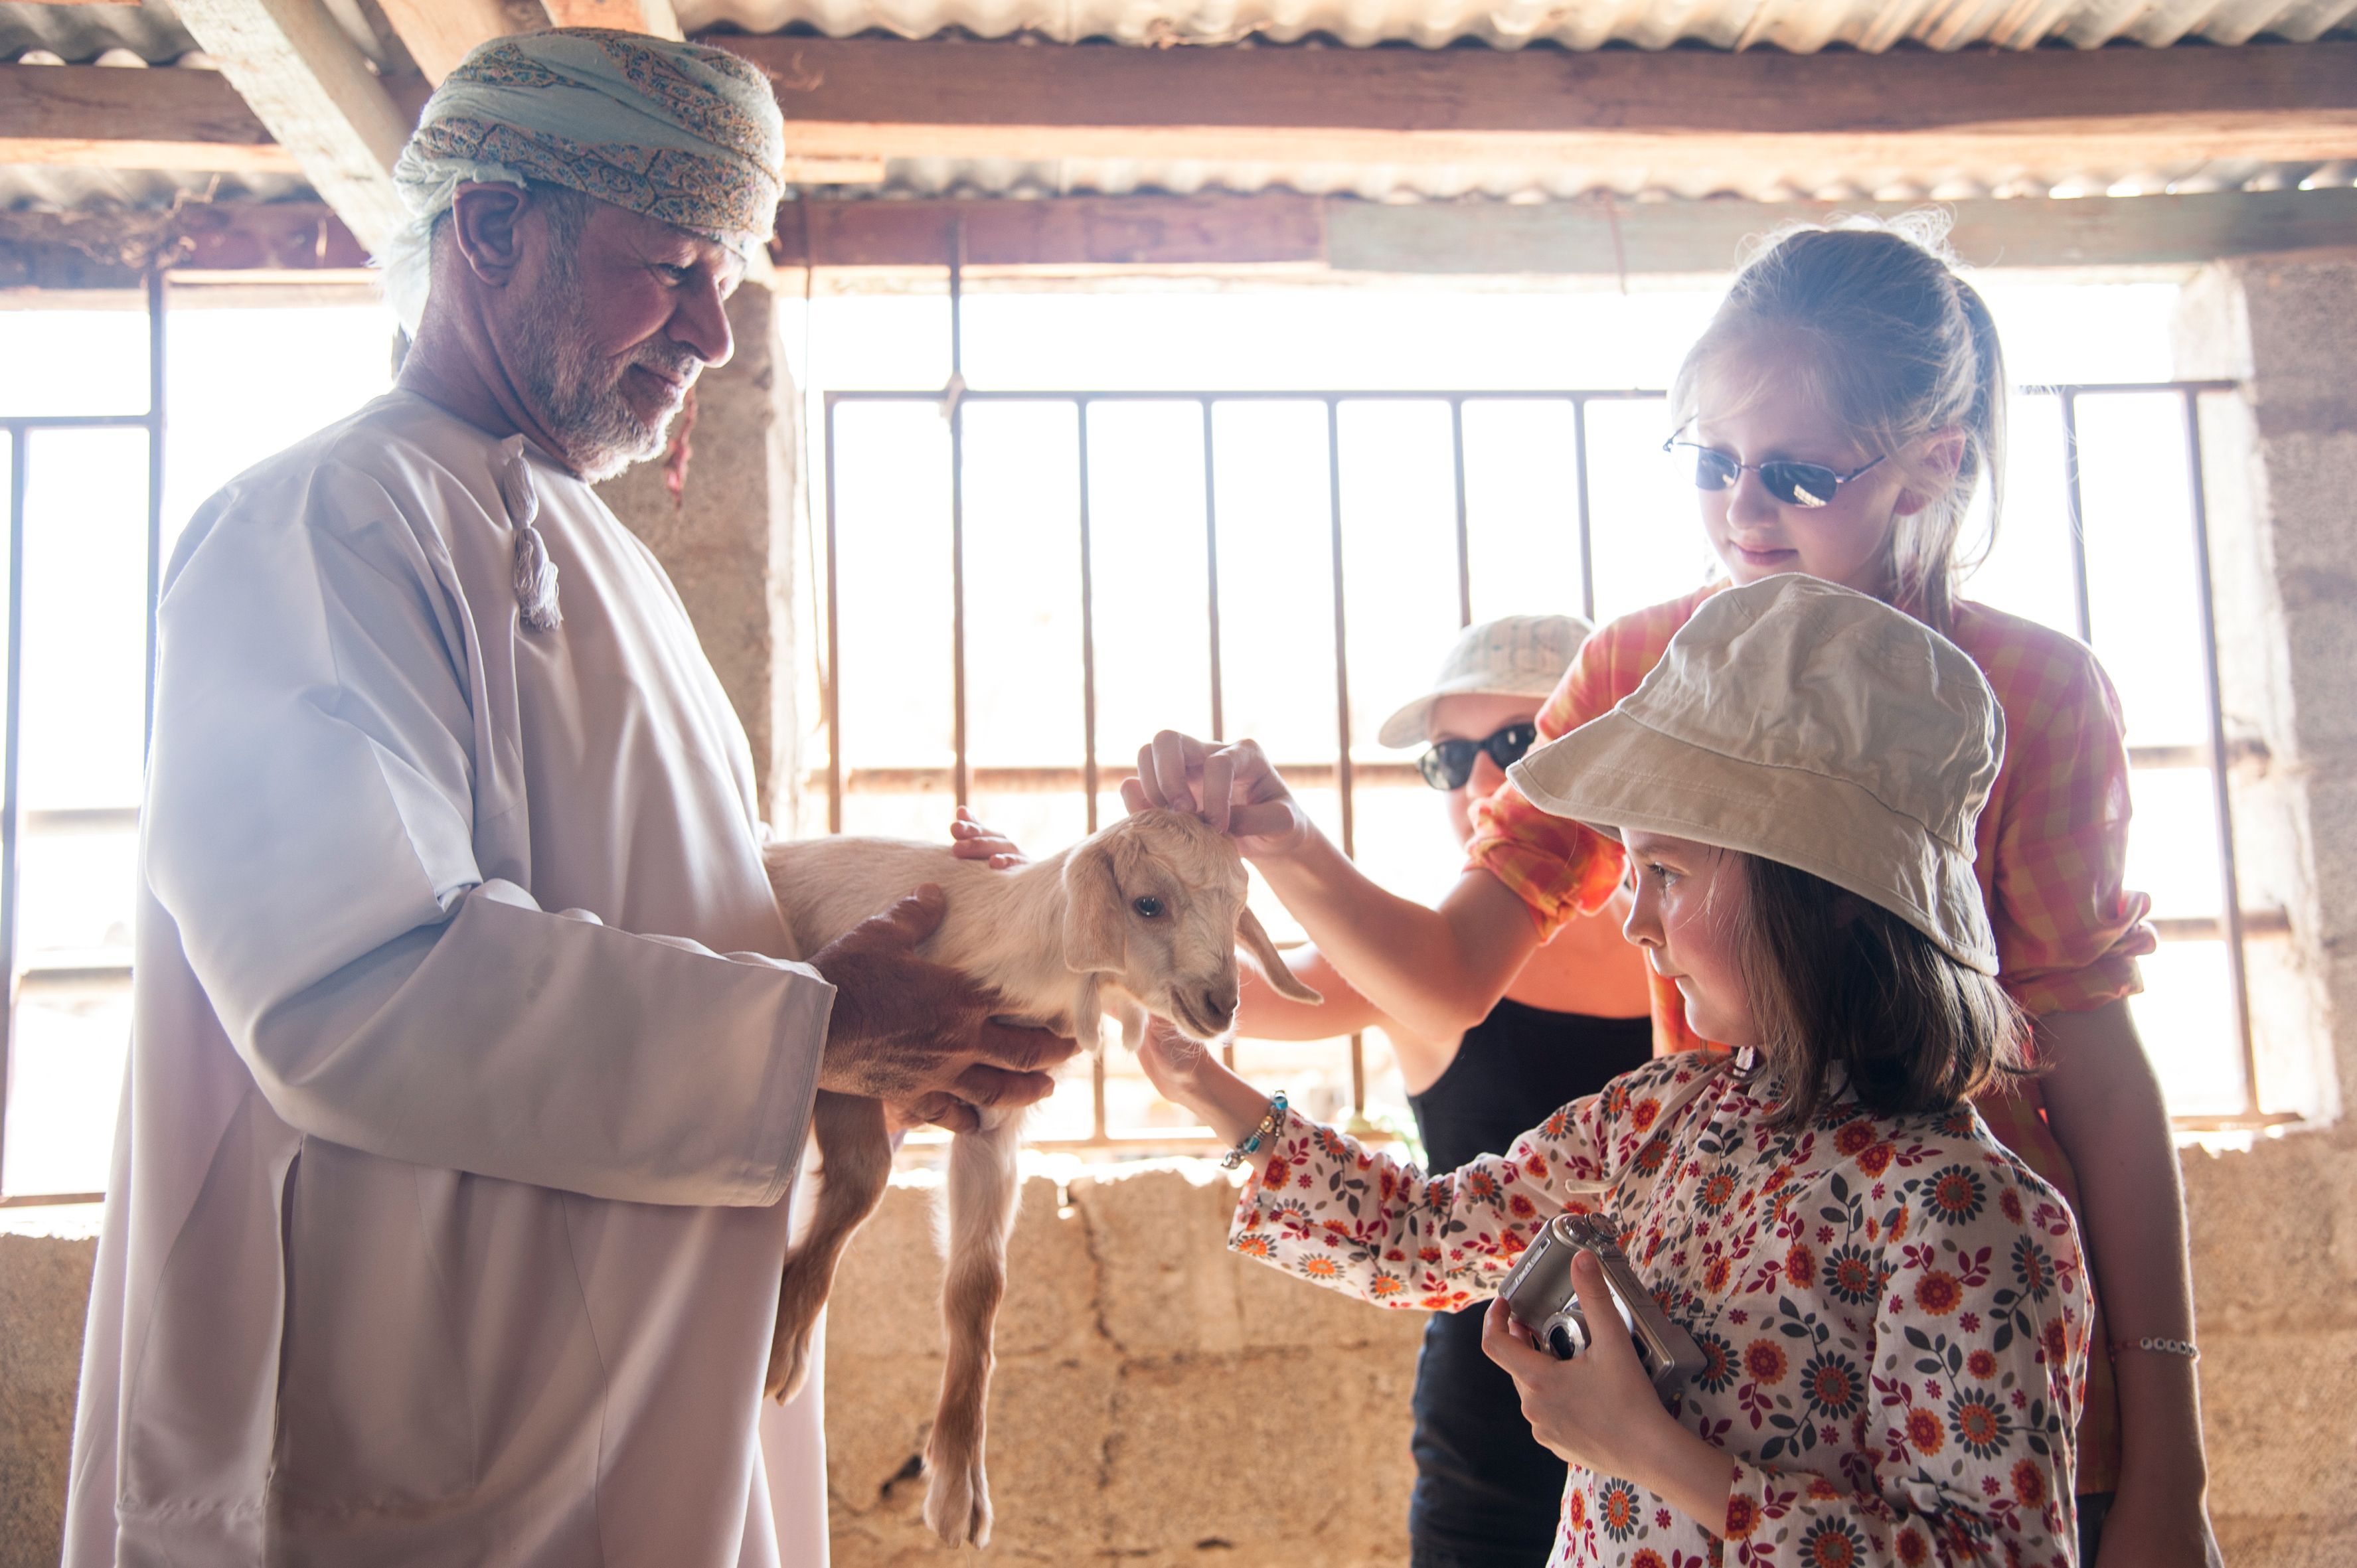 10 Jahre Reiseveranstalter For Family Reisen - Oman Familienreise - Kinder streicheln Ziege